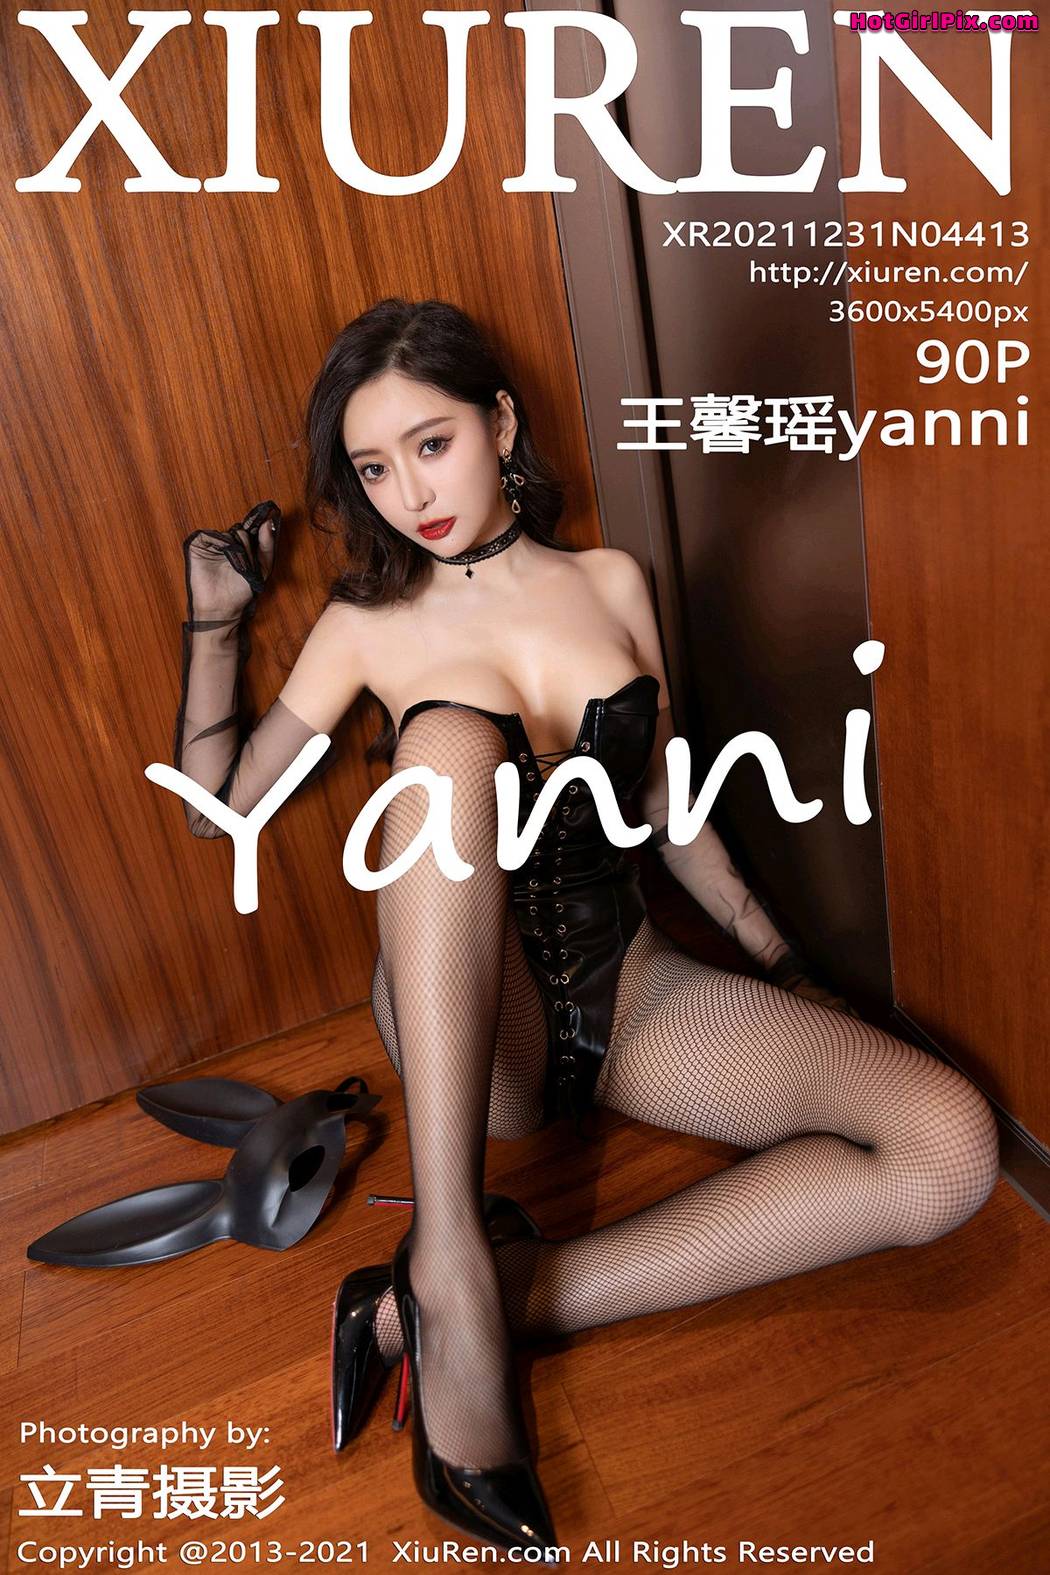 [XIUREN] No.4413 Wang Xin Yao 王馨瑶yanni Cover Photo